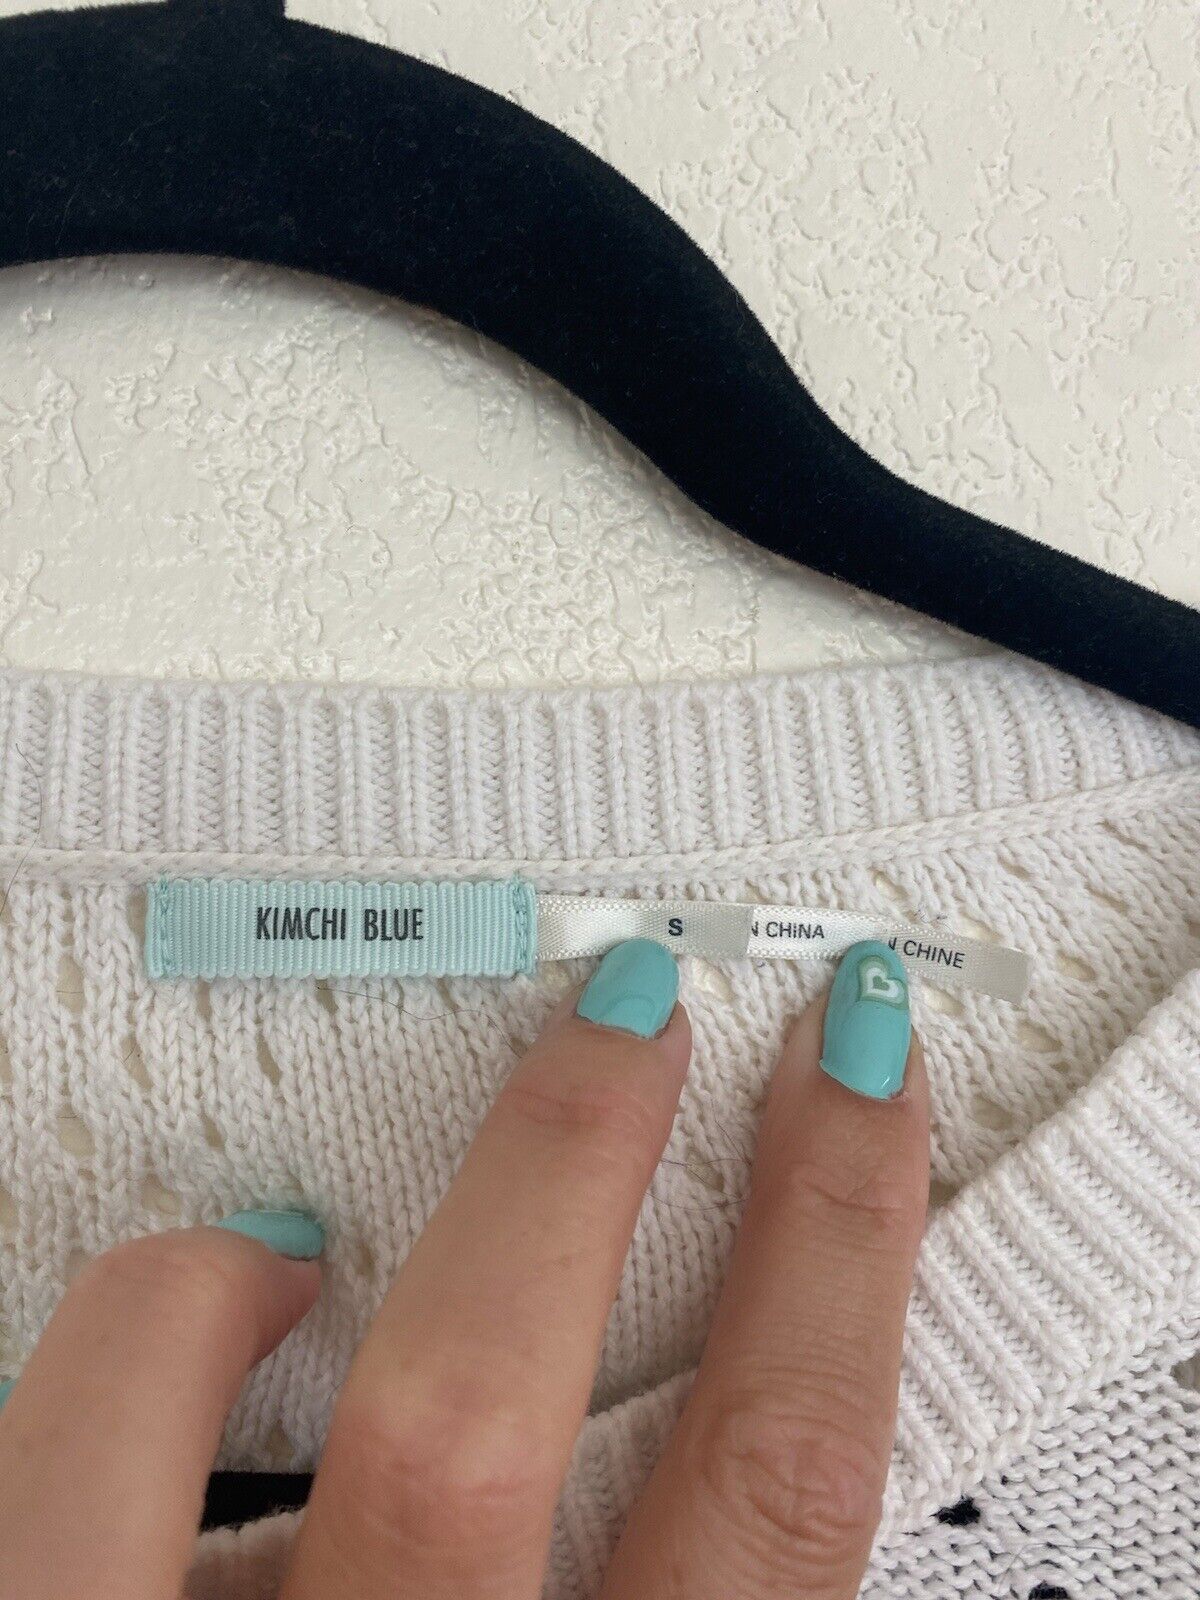 White Knit Sweater - Kimchi Blue - Women’s Small # 2097